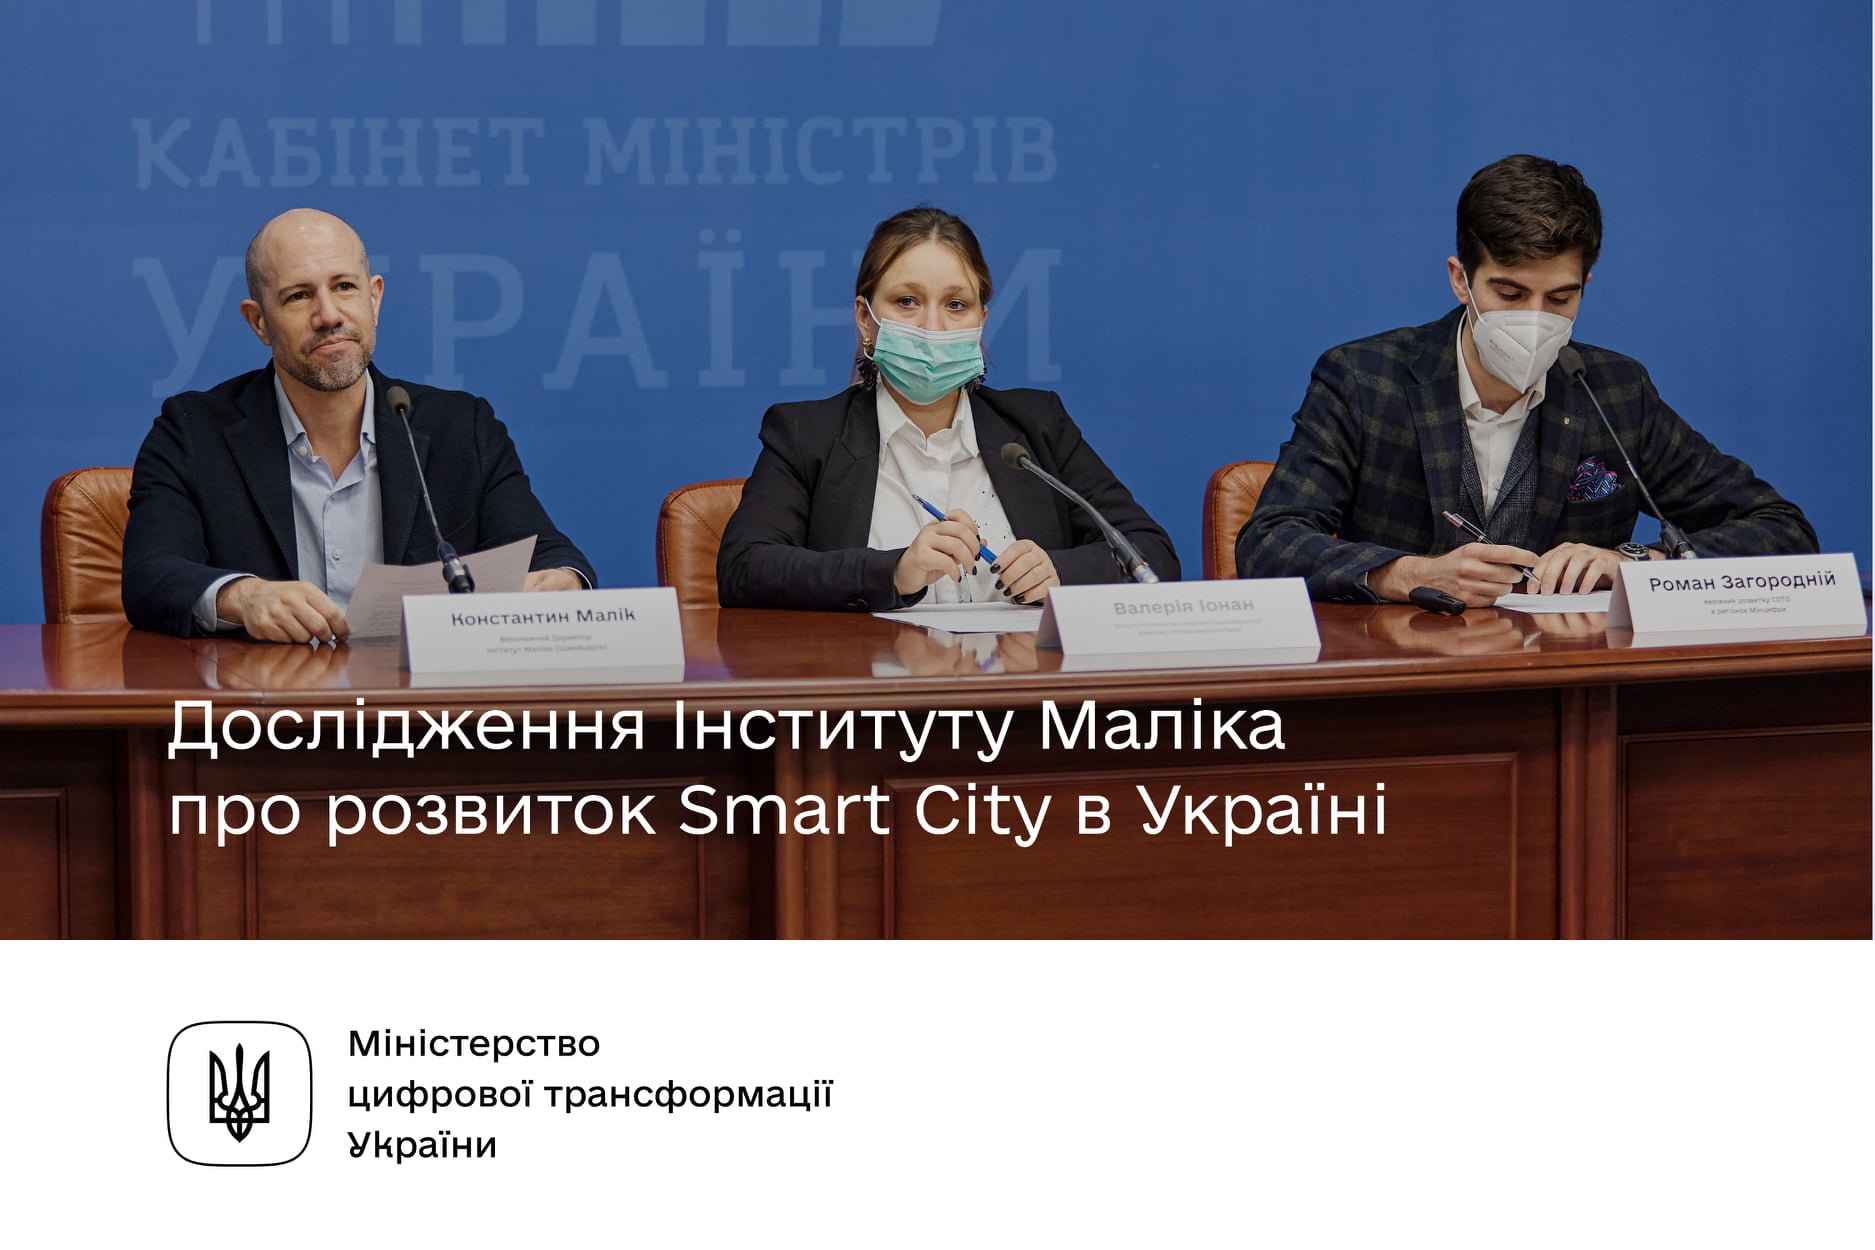 Дослідження розвитку Smart City в Україні